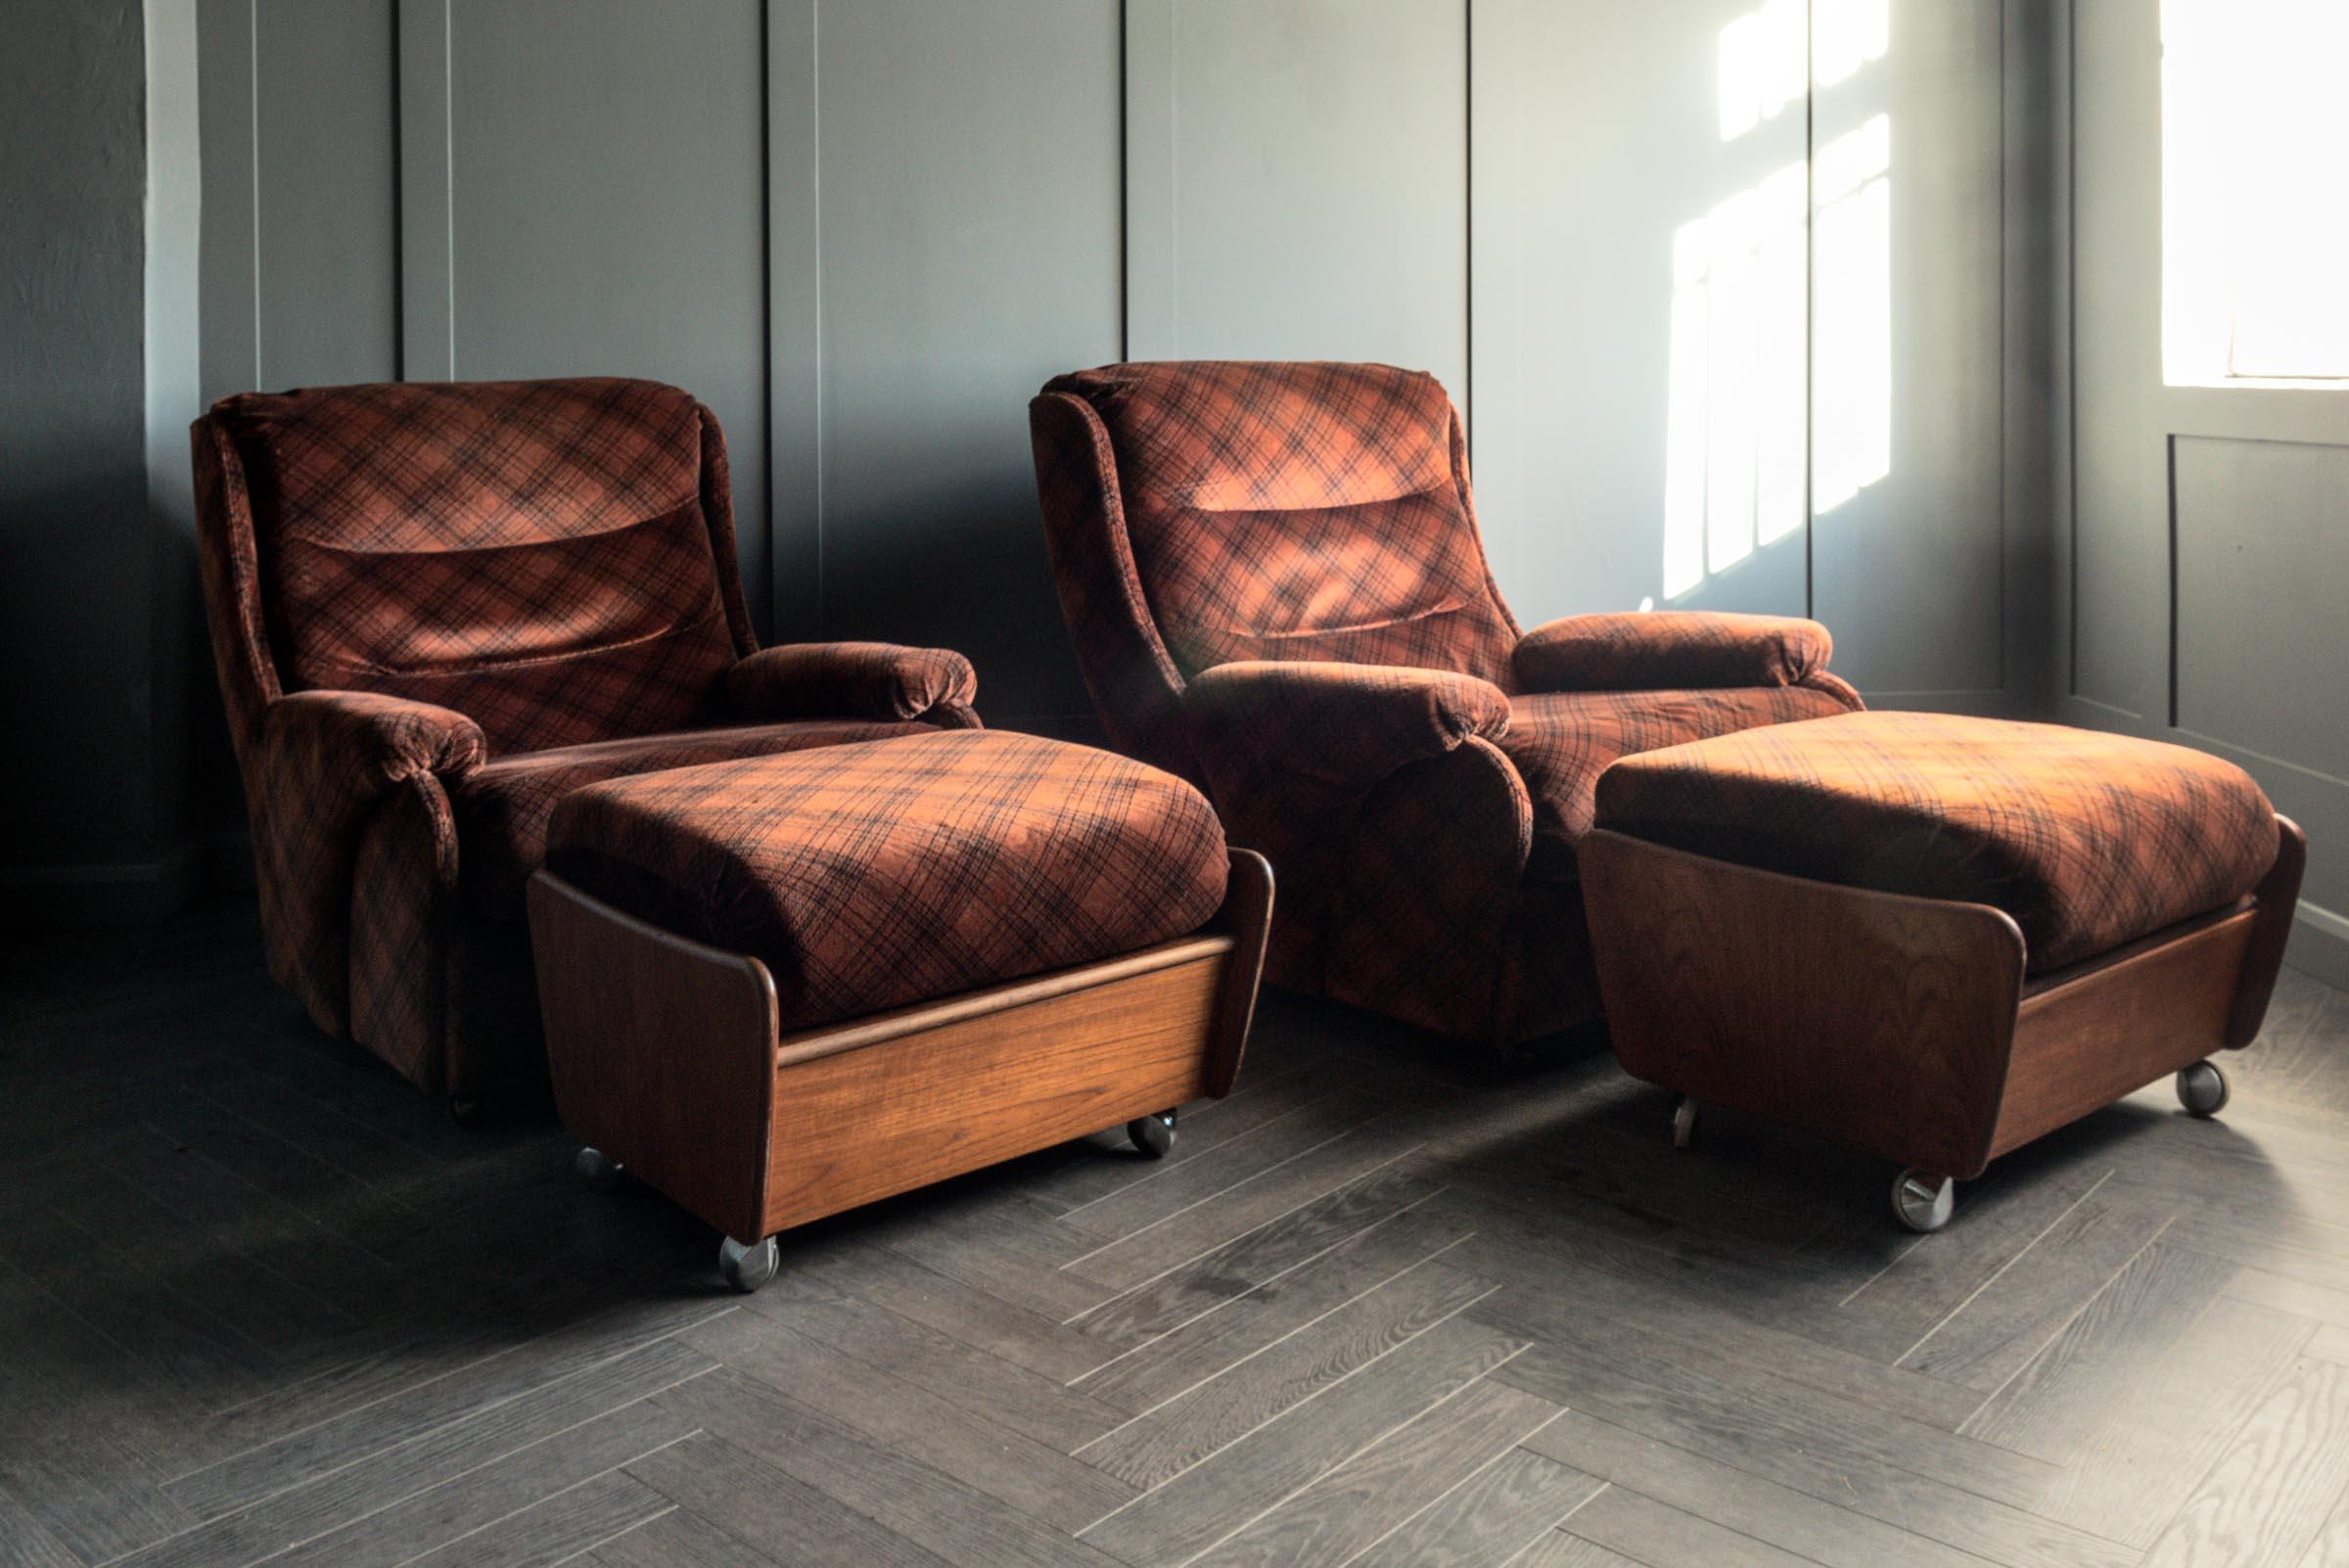 Paire de fauteuils G Plan Mikado extrêmement rare et qui s'apprécie rapidement, avec tabourets assortis. Style rétro vintage du milieu du siècle, datant de 1973, en tissu L702 